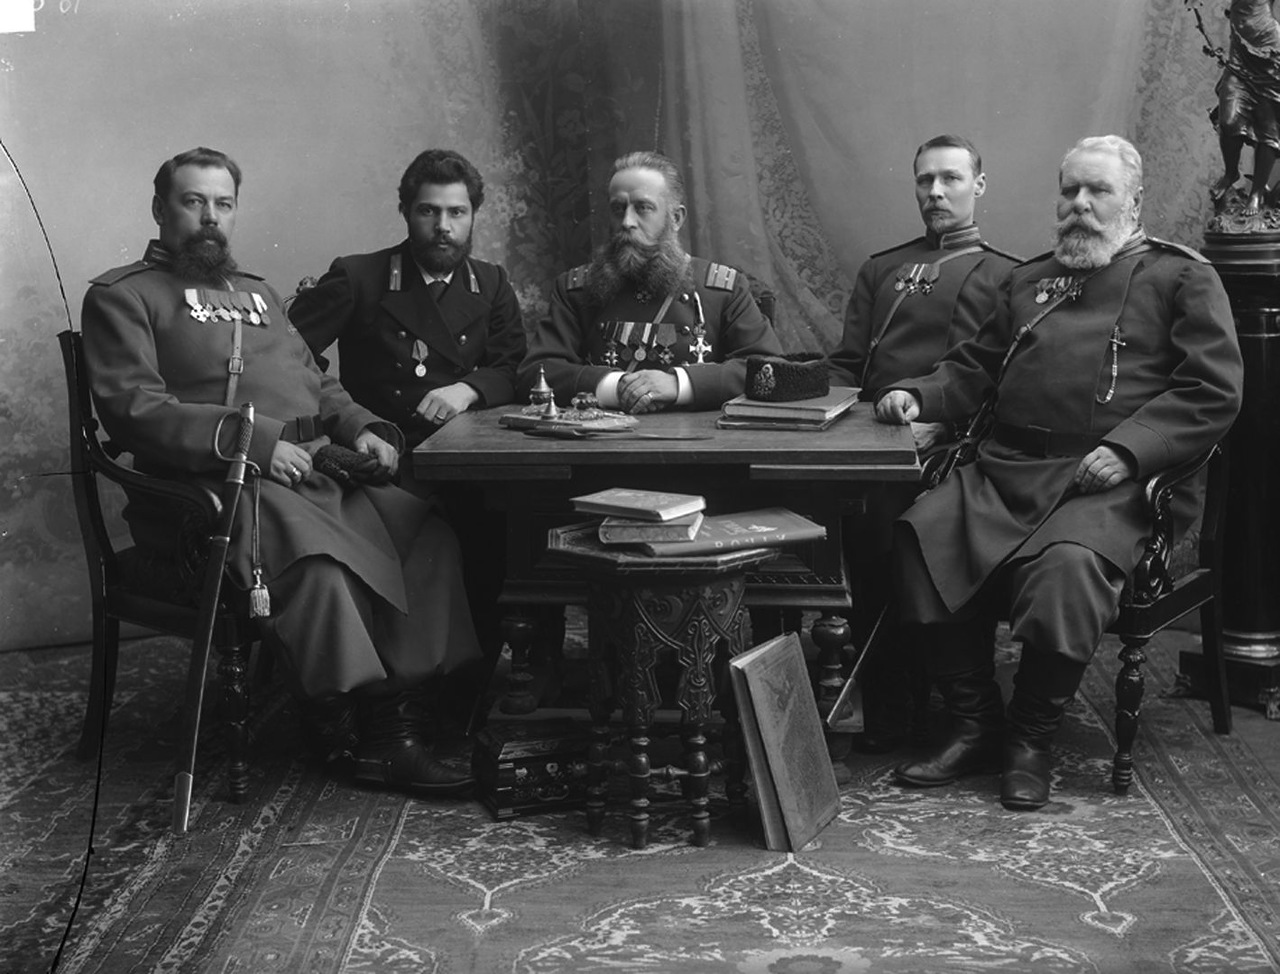 Фотографии времен российской империи